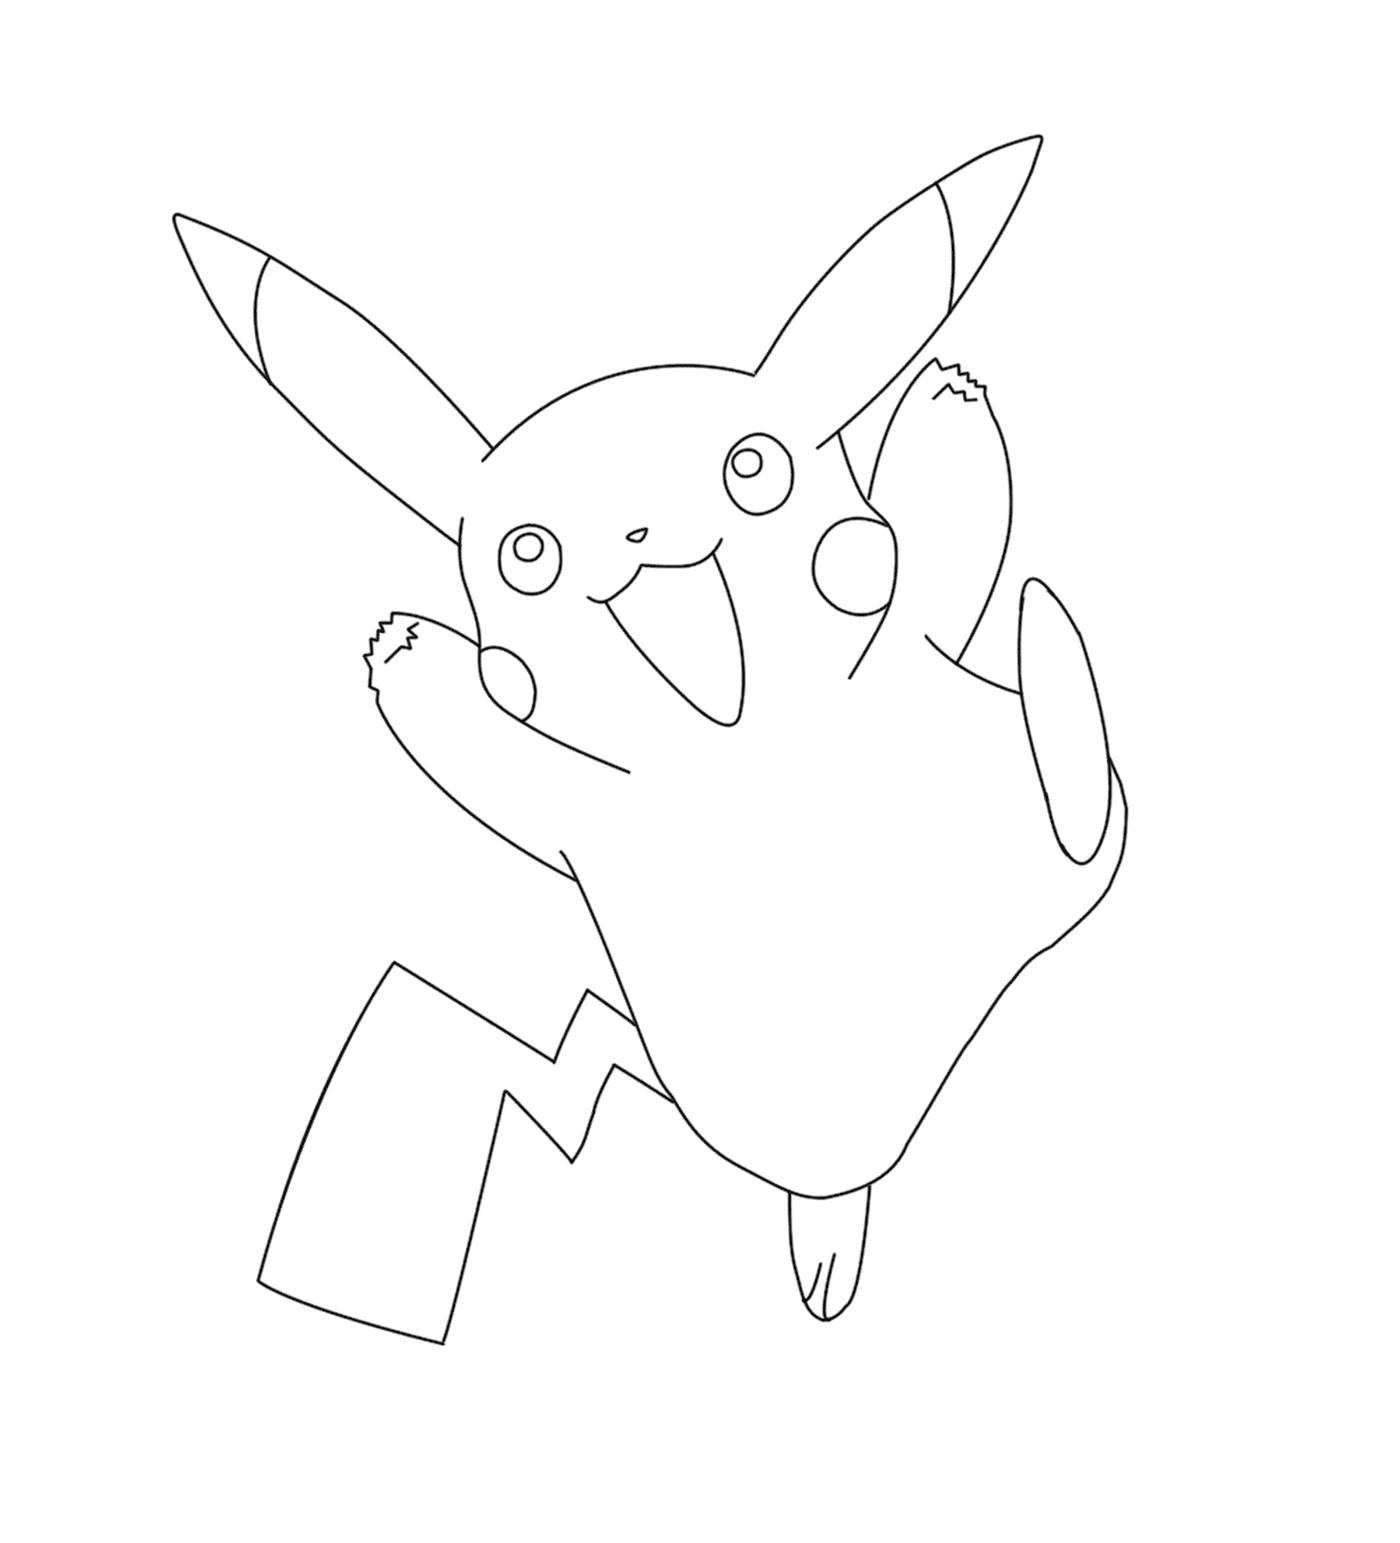  Pikachu im Spiel Pokémon Go 